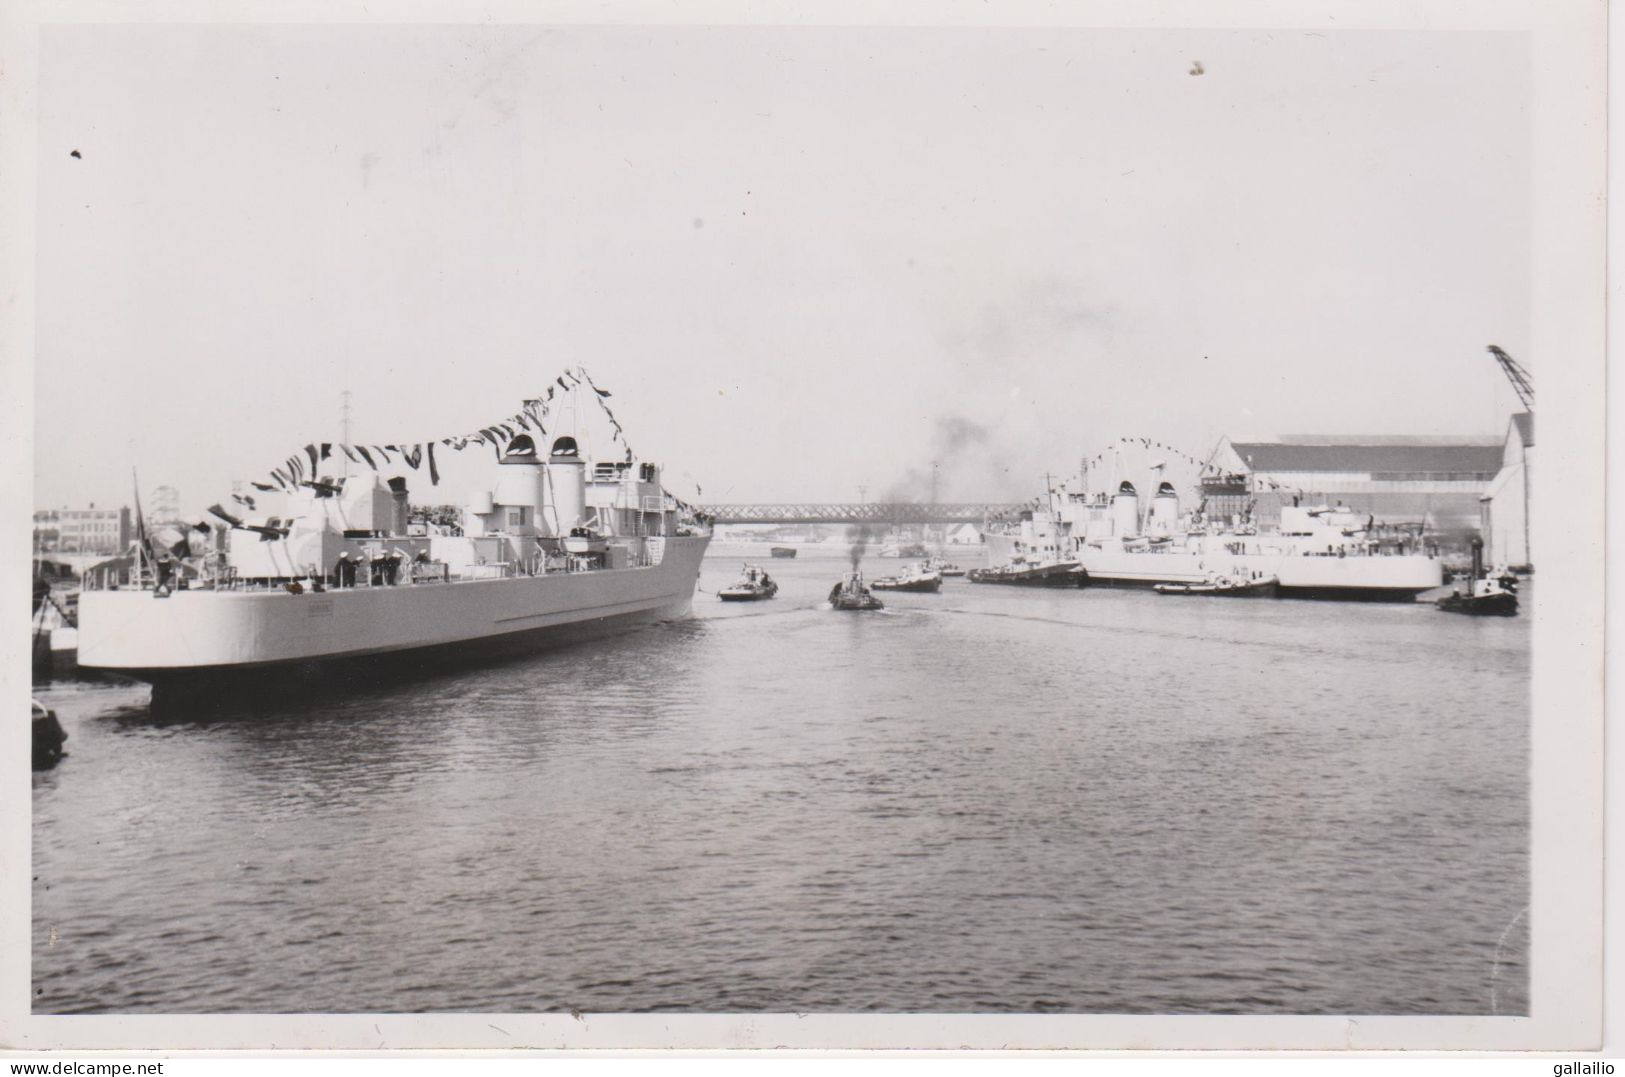 PHOTO PRESSE LES ESCORTEURS KERSAINT ET SURCOUF A LORIENT OCTOBRE 1953 FORMAT 13 X 18 CMS - Schiffe